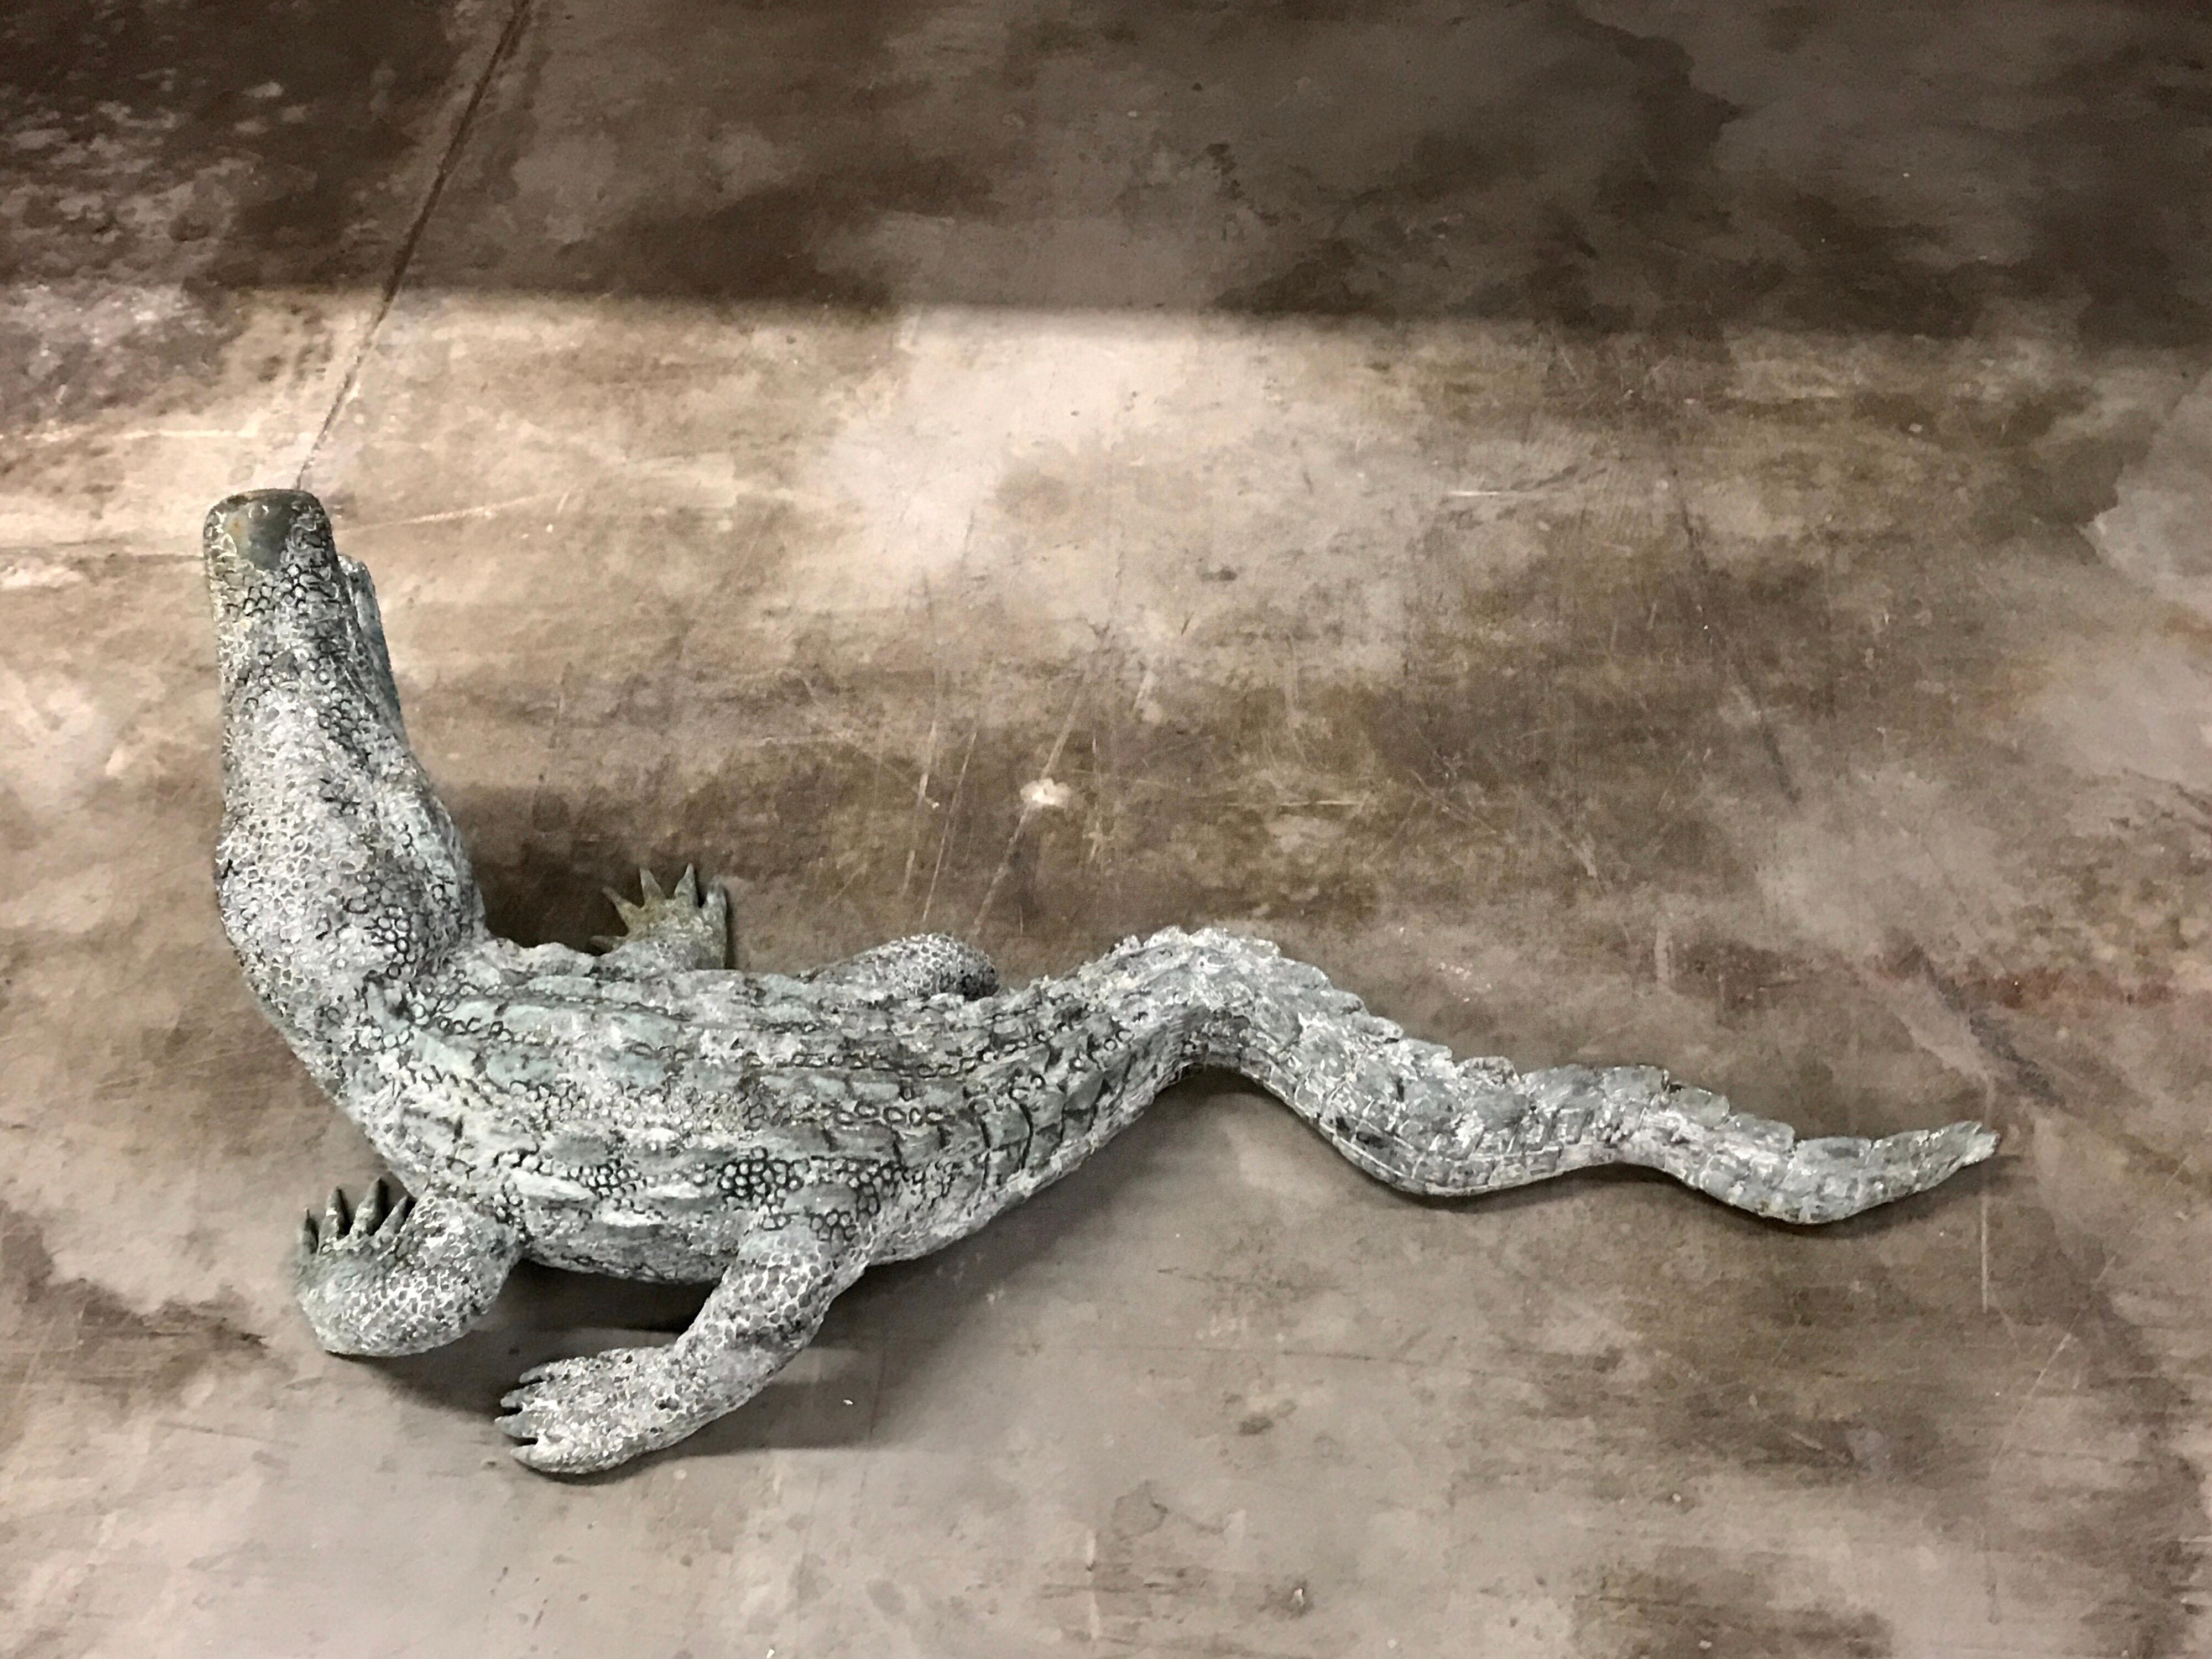 Cast Bronze Garden Sculpture of an Alligator For Sale 2